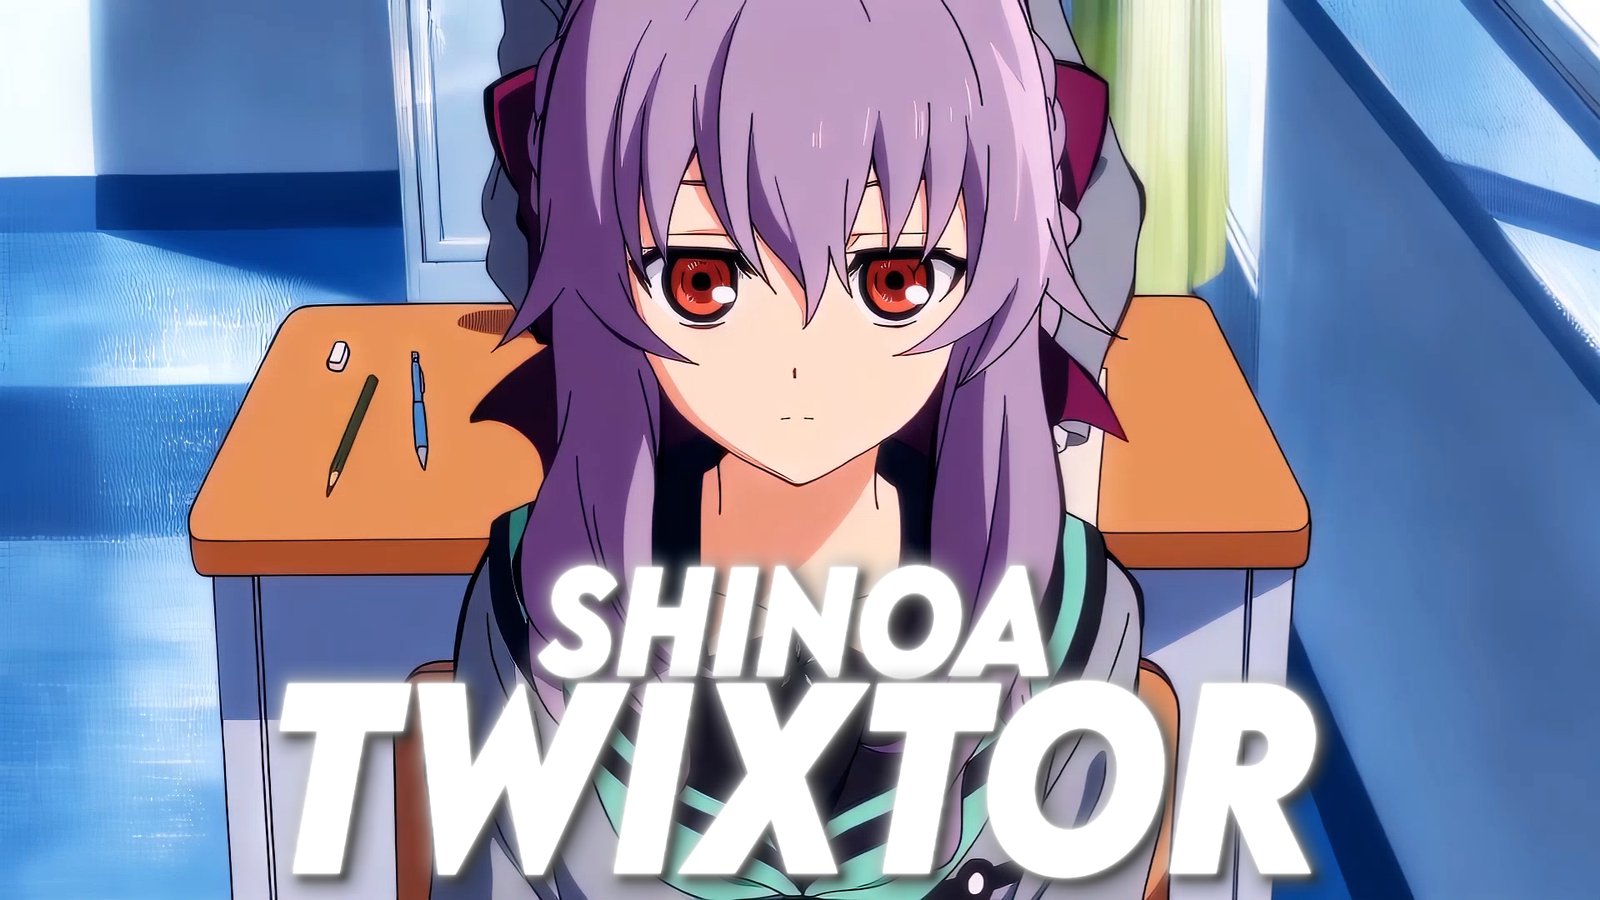 Shinoa Twixtor